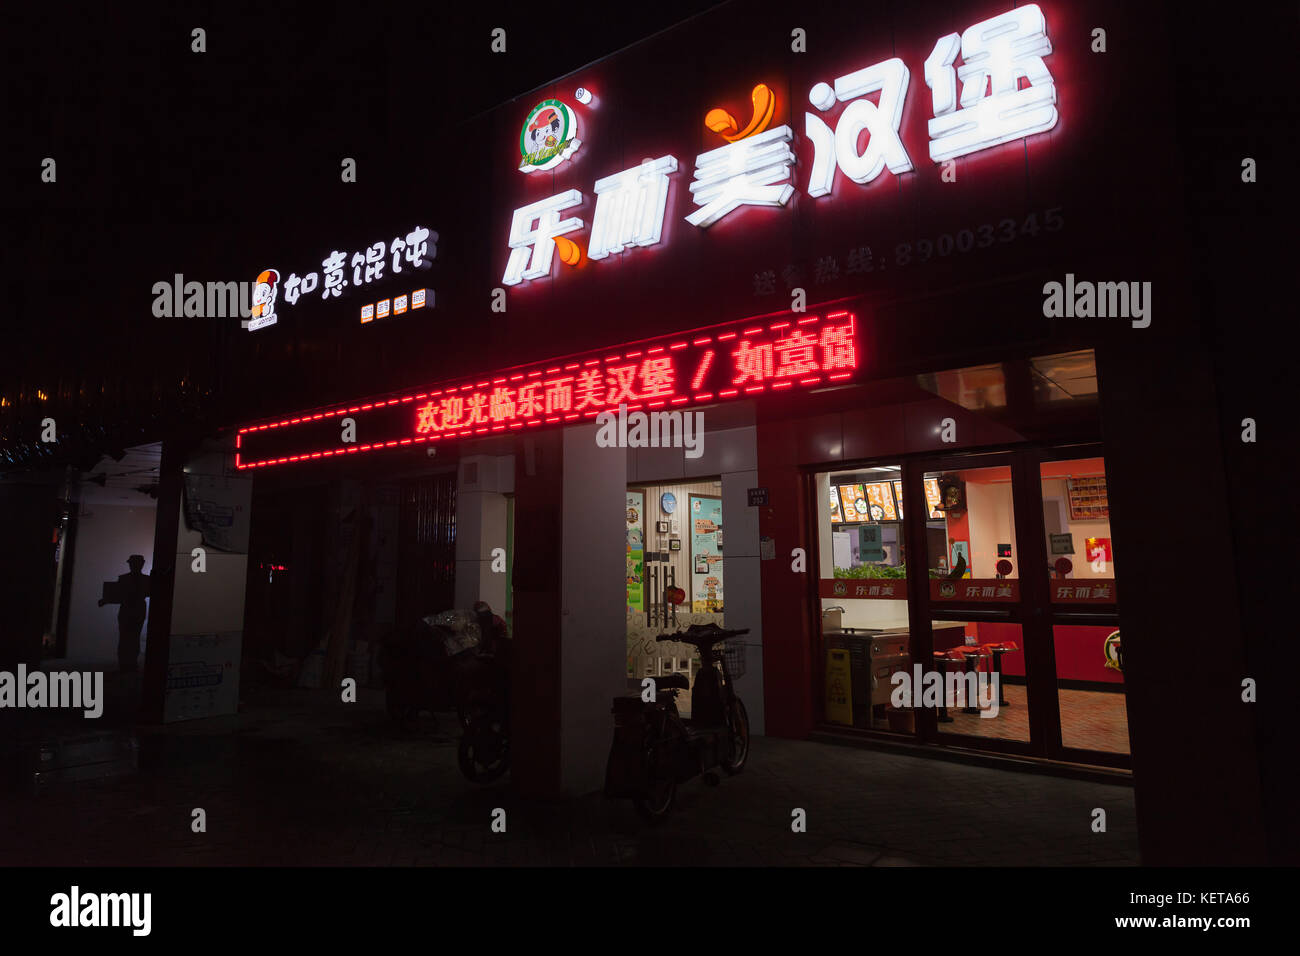 Hangzhou, Chine - décembre 3, 2014 : chinois nuit ville rue avec néons Publicité lumineuse sur le mur de fast food restaurant Banque D'Images